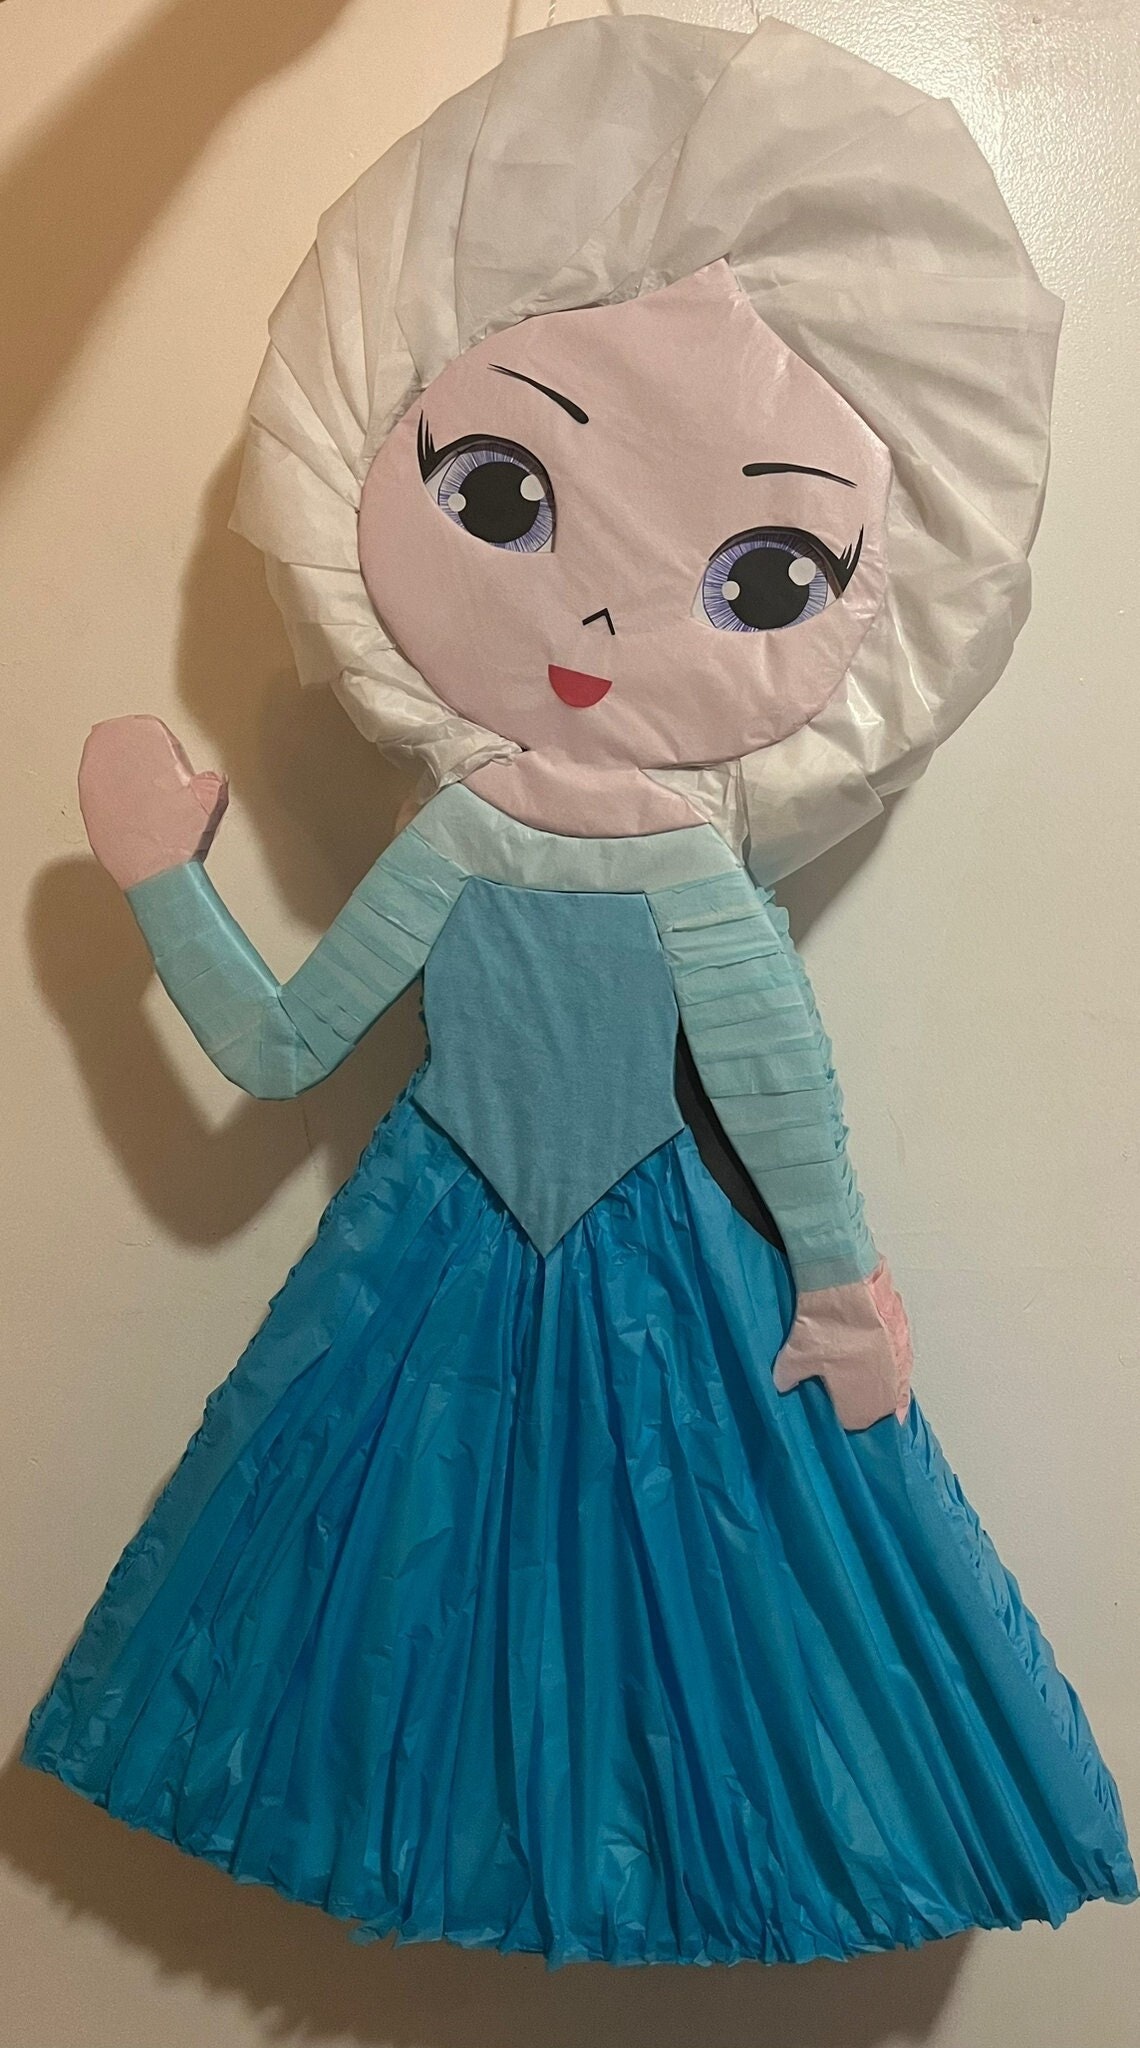 Piñata Frozen ( Elsa!!)#7 - Piñatas travesurita